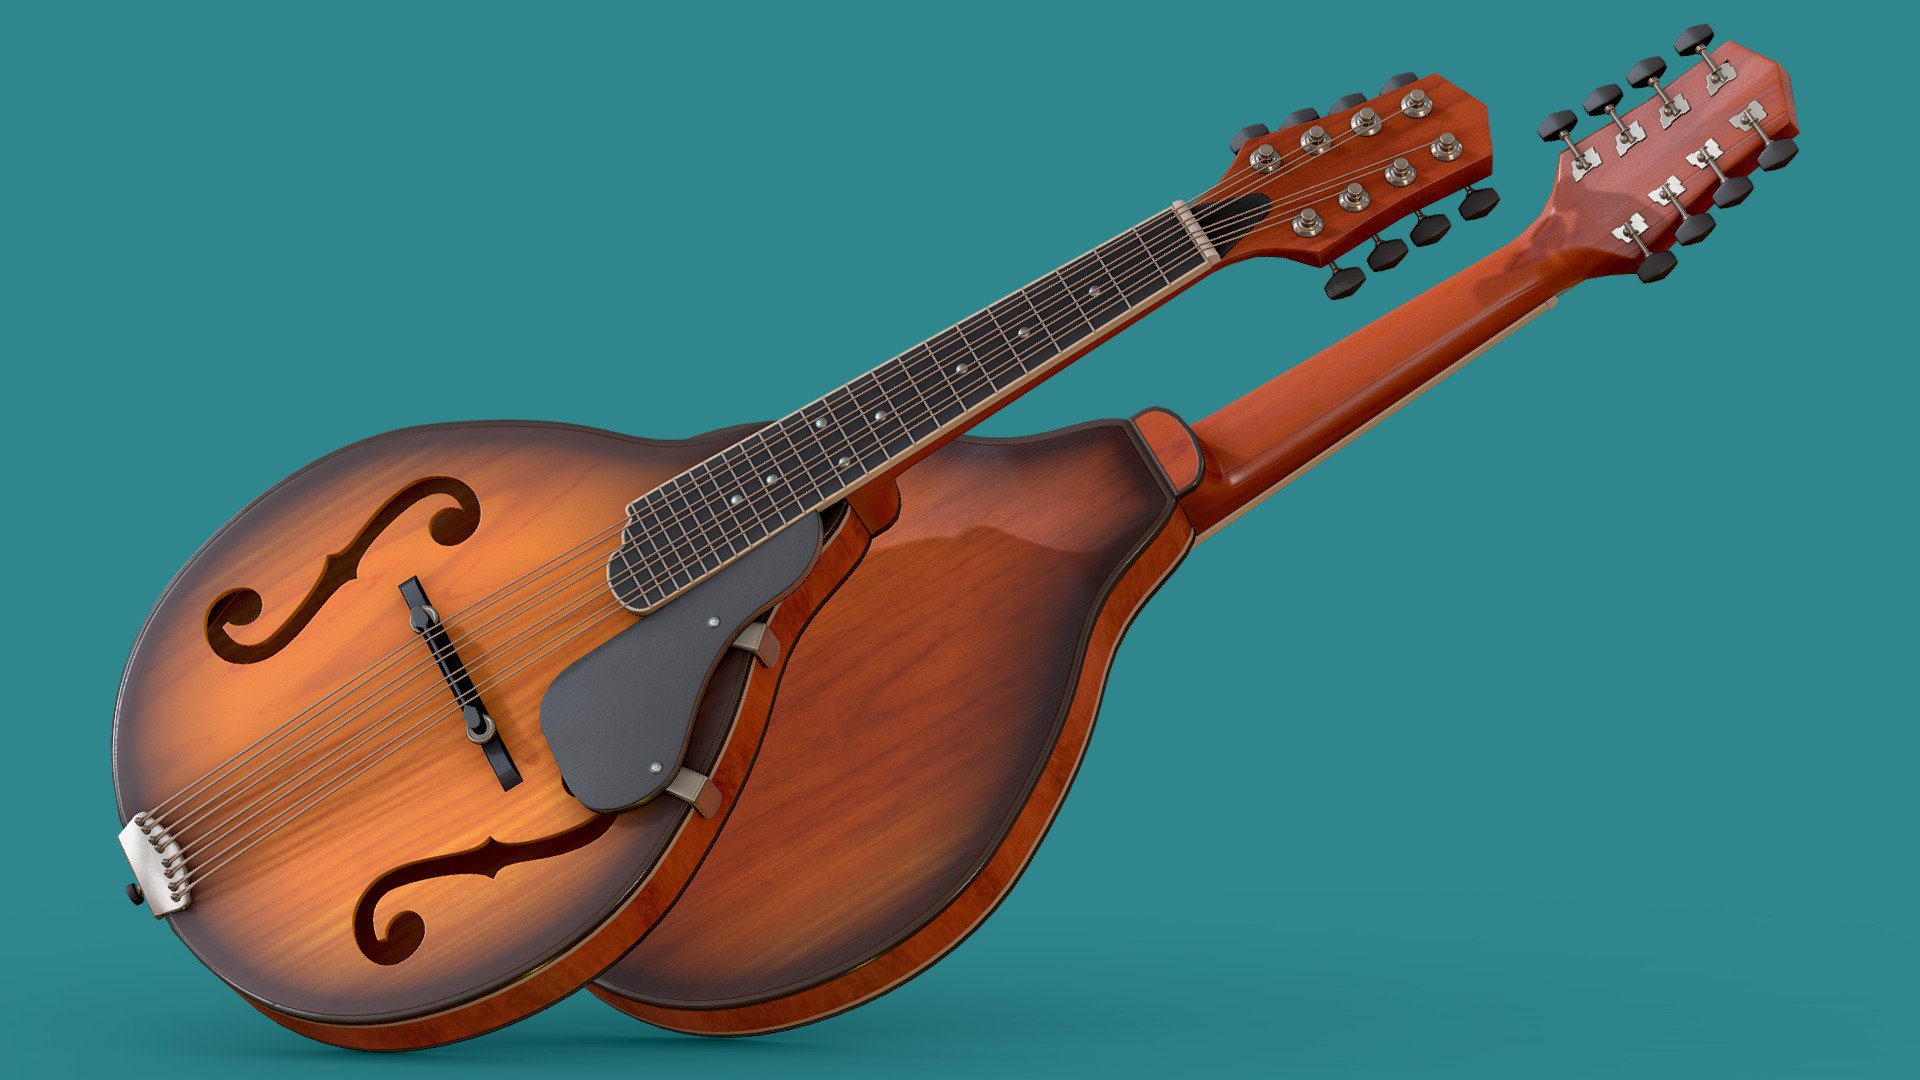 Mandolin Strings Instrument Buy Royalty Free 3d Model By Maddhattpatt Maddhatt 2daacb9 0242